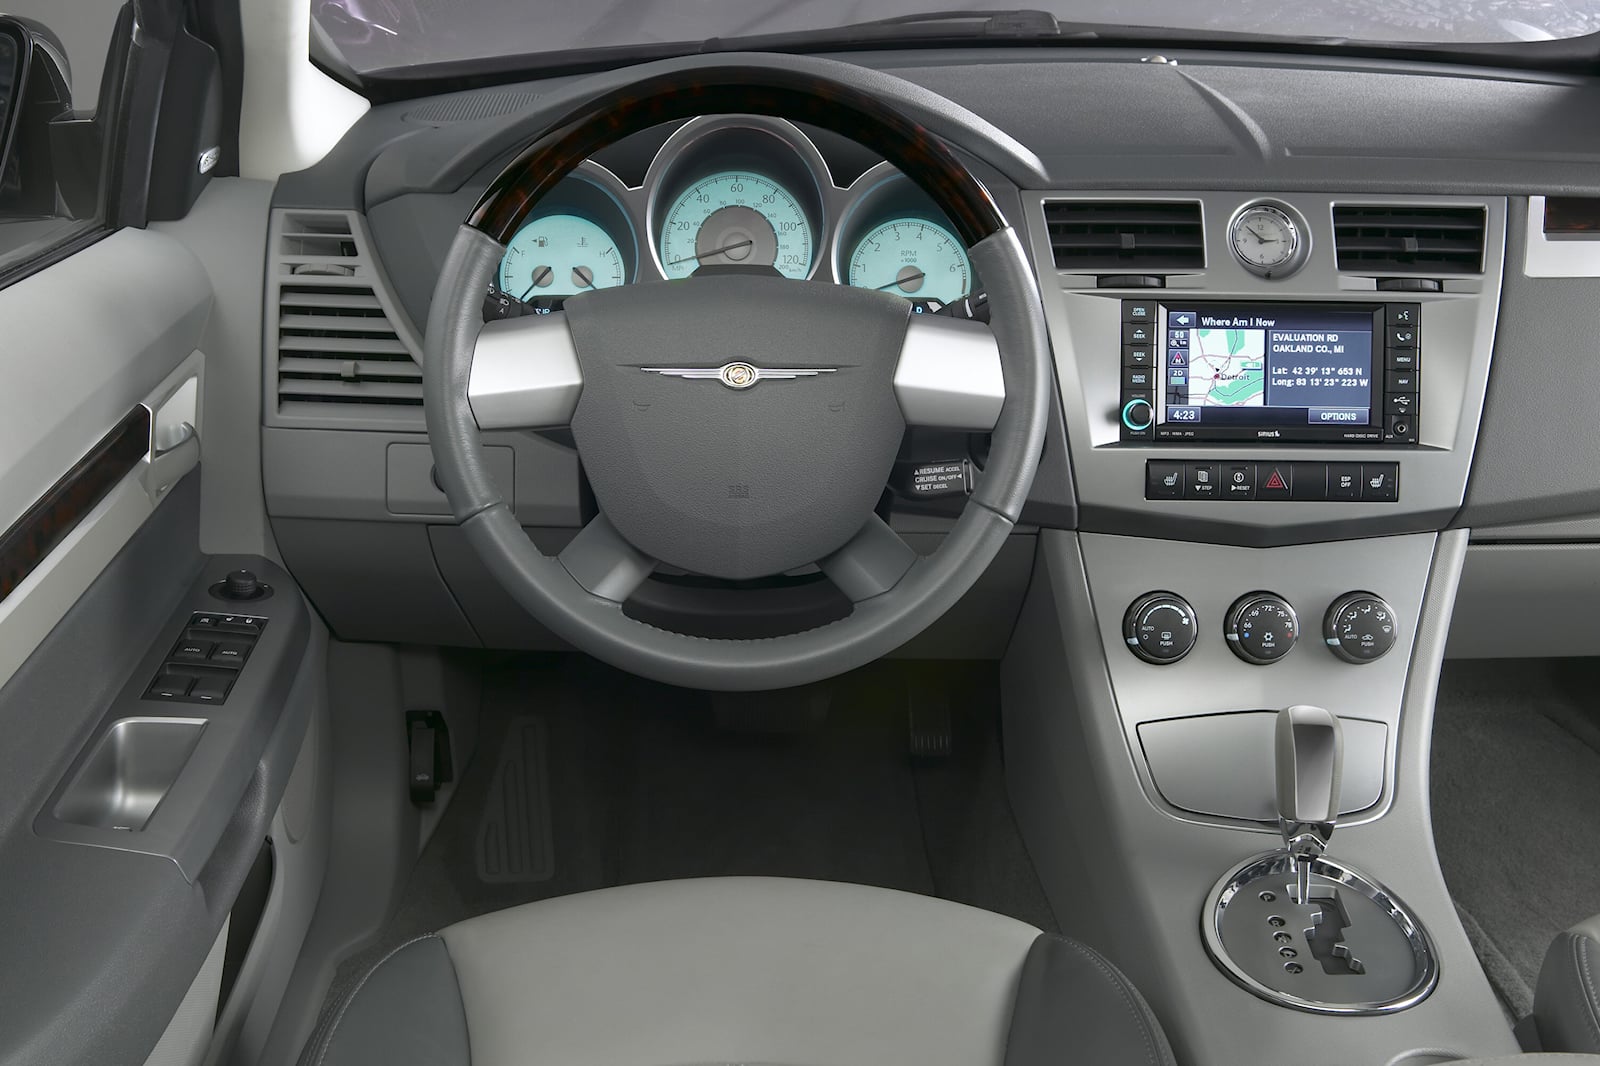 2010 Chrysler Sebring Sedan Steering Wheel